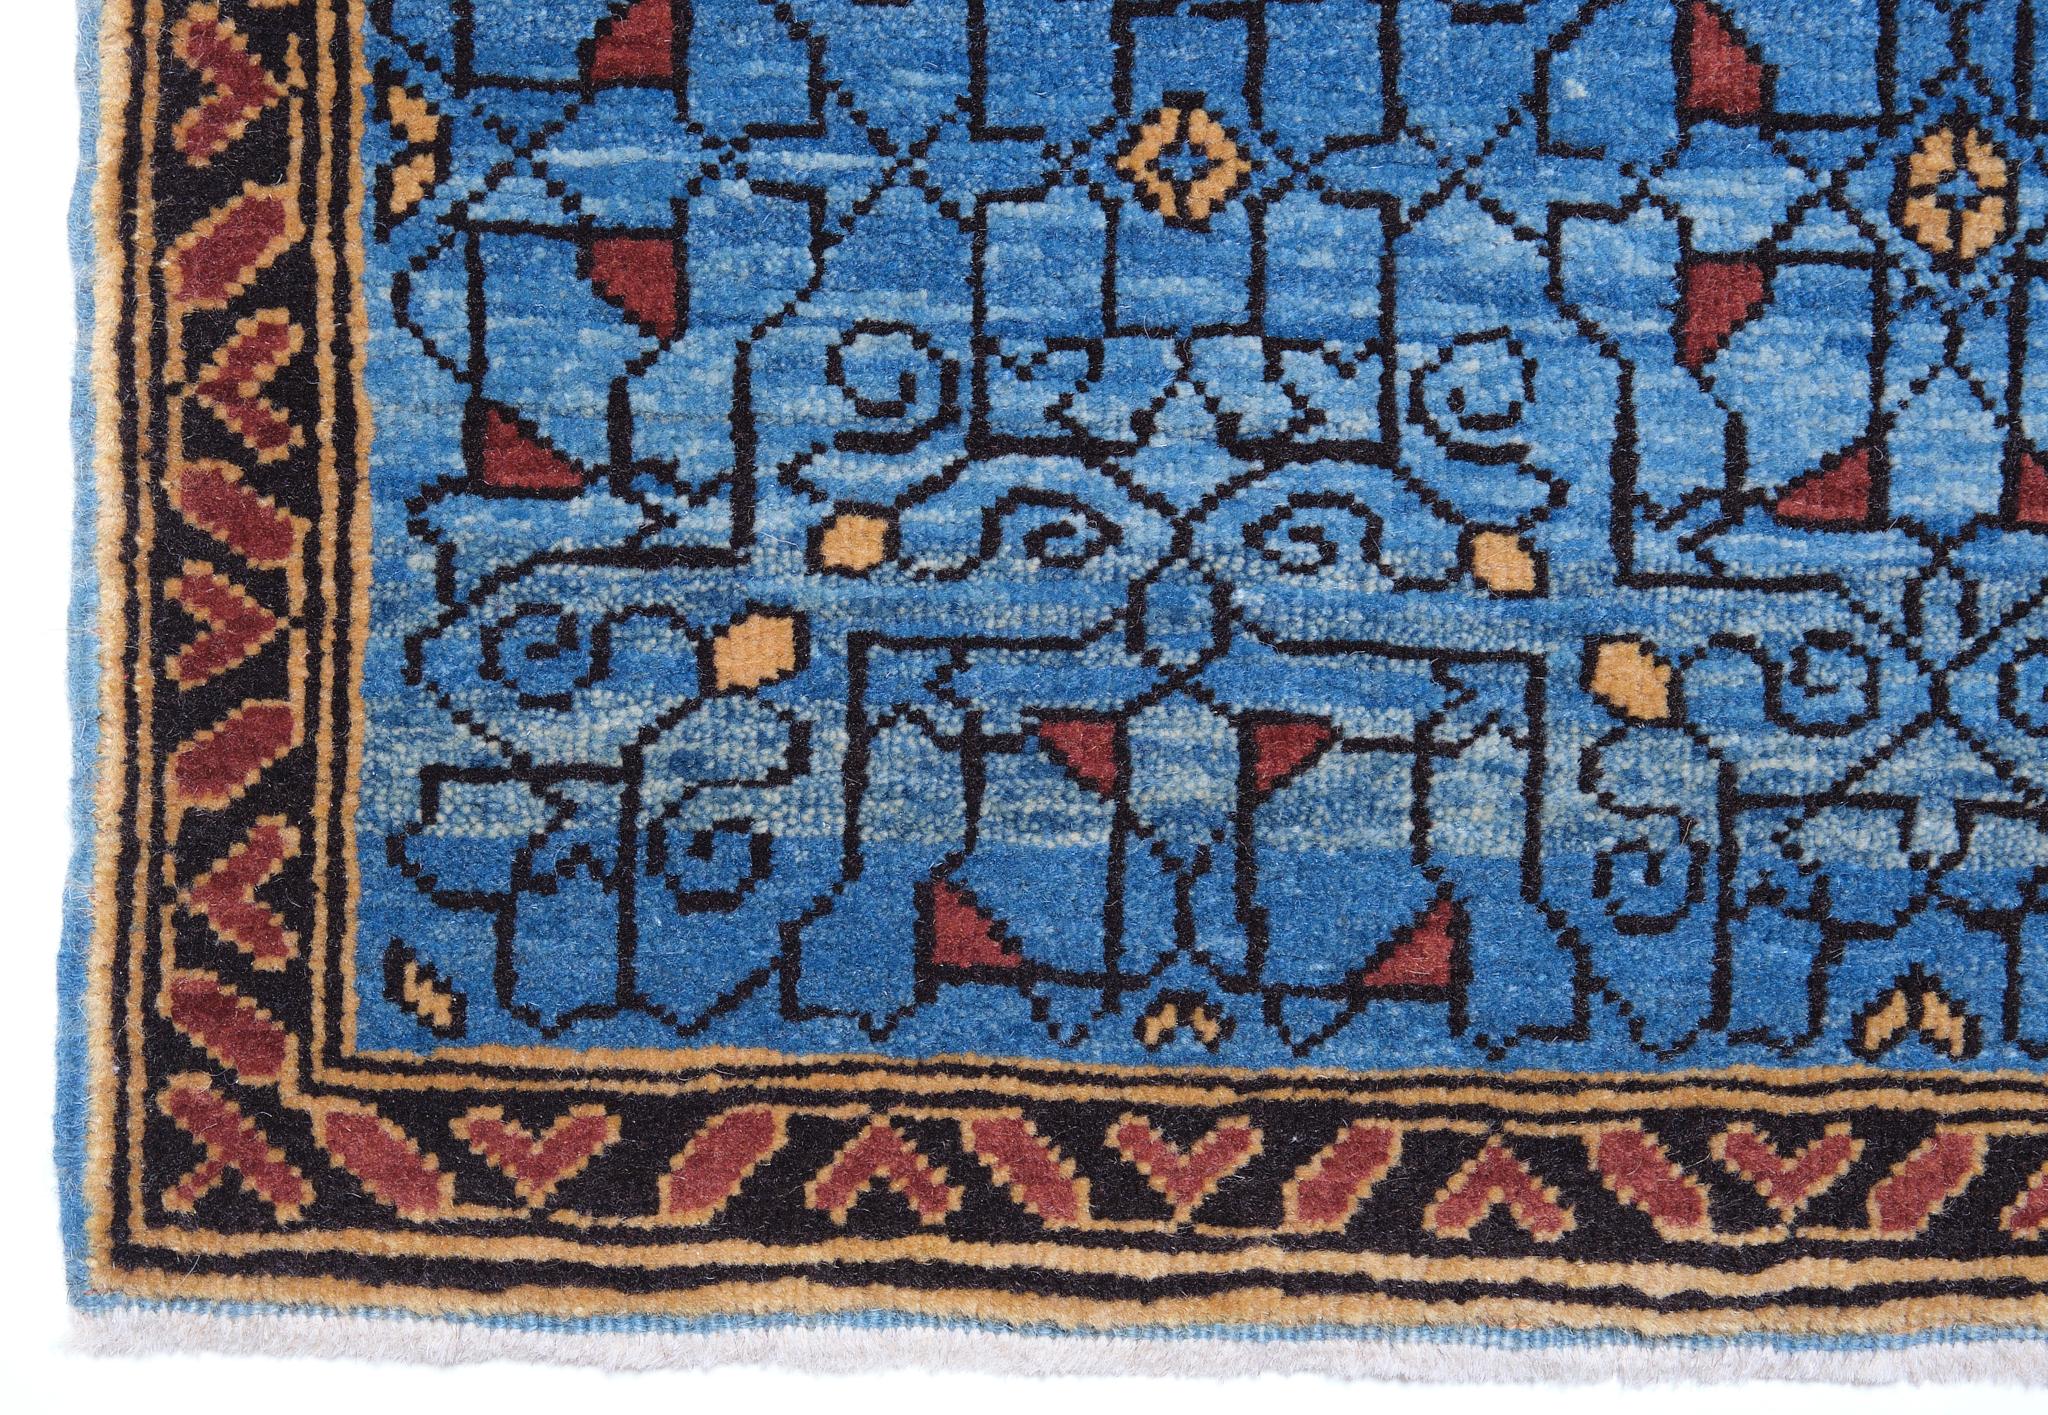 Die Quelle des Teppichs stammt aus dem Besitz von Endre Unger, der 1992 bei Sotheby's verkauft wurde. Dieser Teppich mit dem zentralen Stern wurde im frühen 16. Jahrhundert von einem Mamluken-Sultan in Kairo, Ägypten, entworfen. Das interpretierte